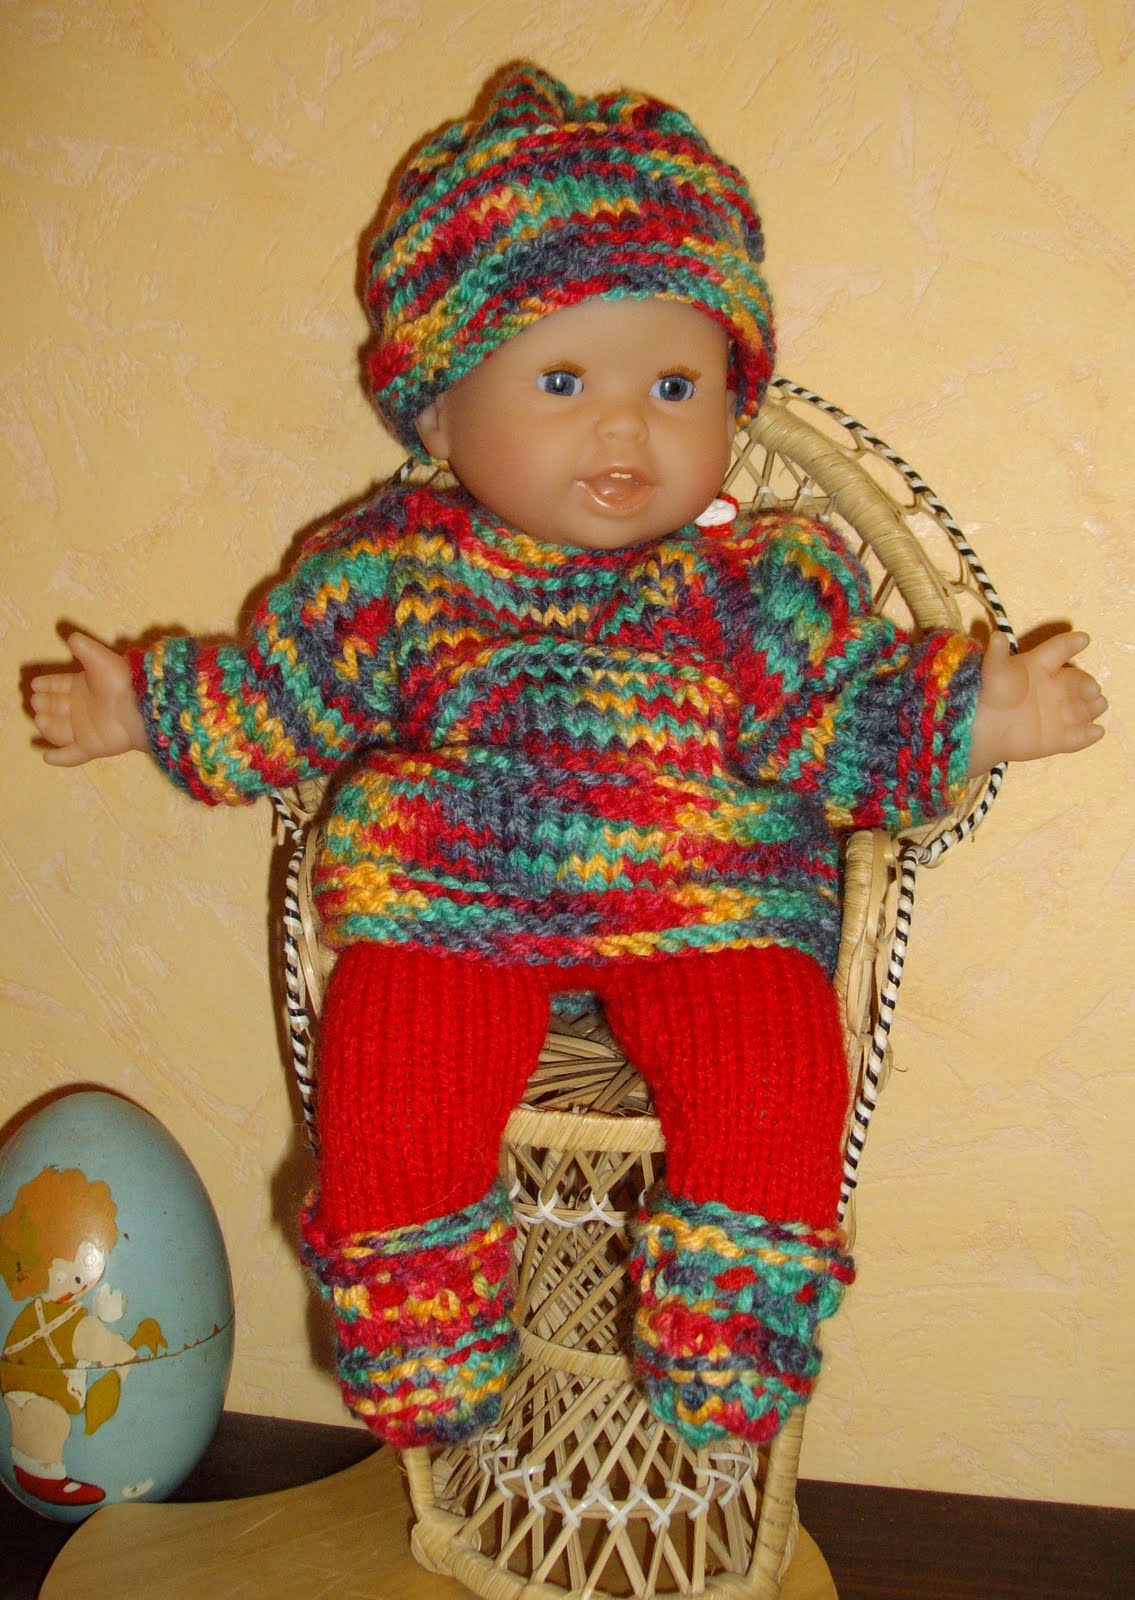 OFFERT: Tuto bonnet à tricoter pour poupon 30 cm